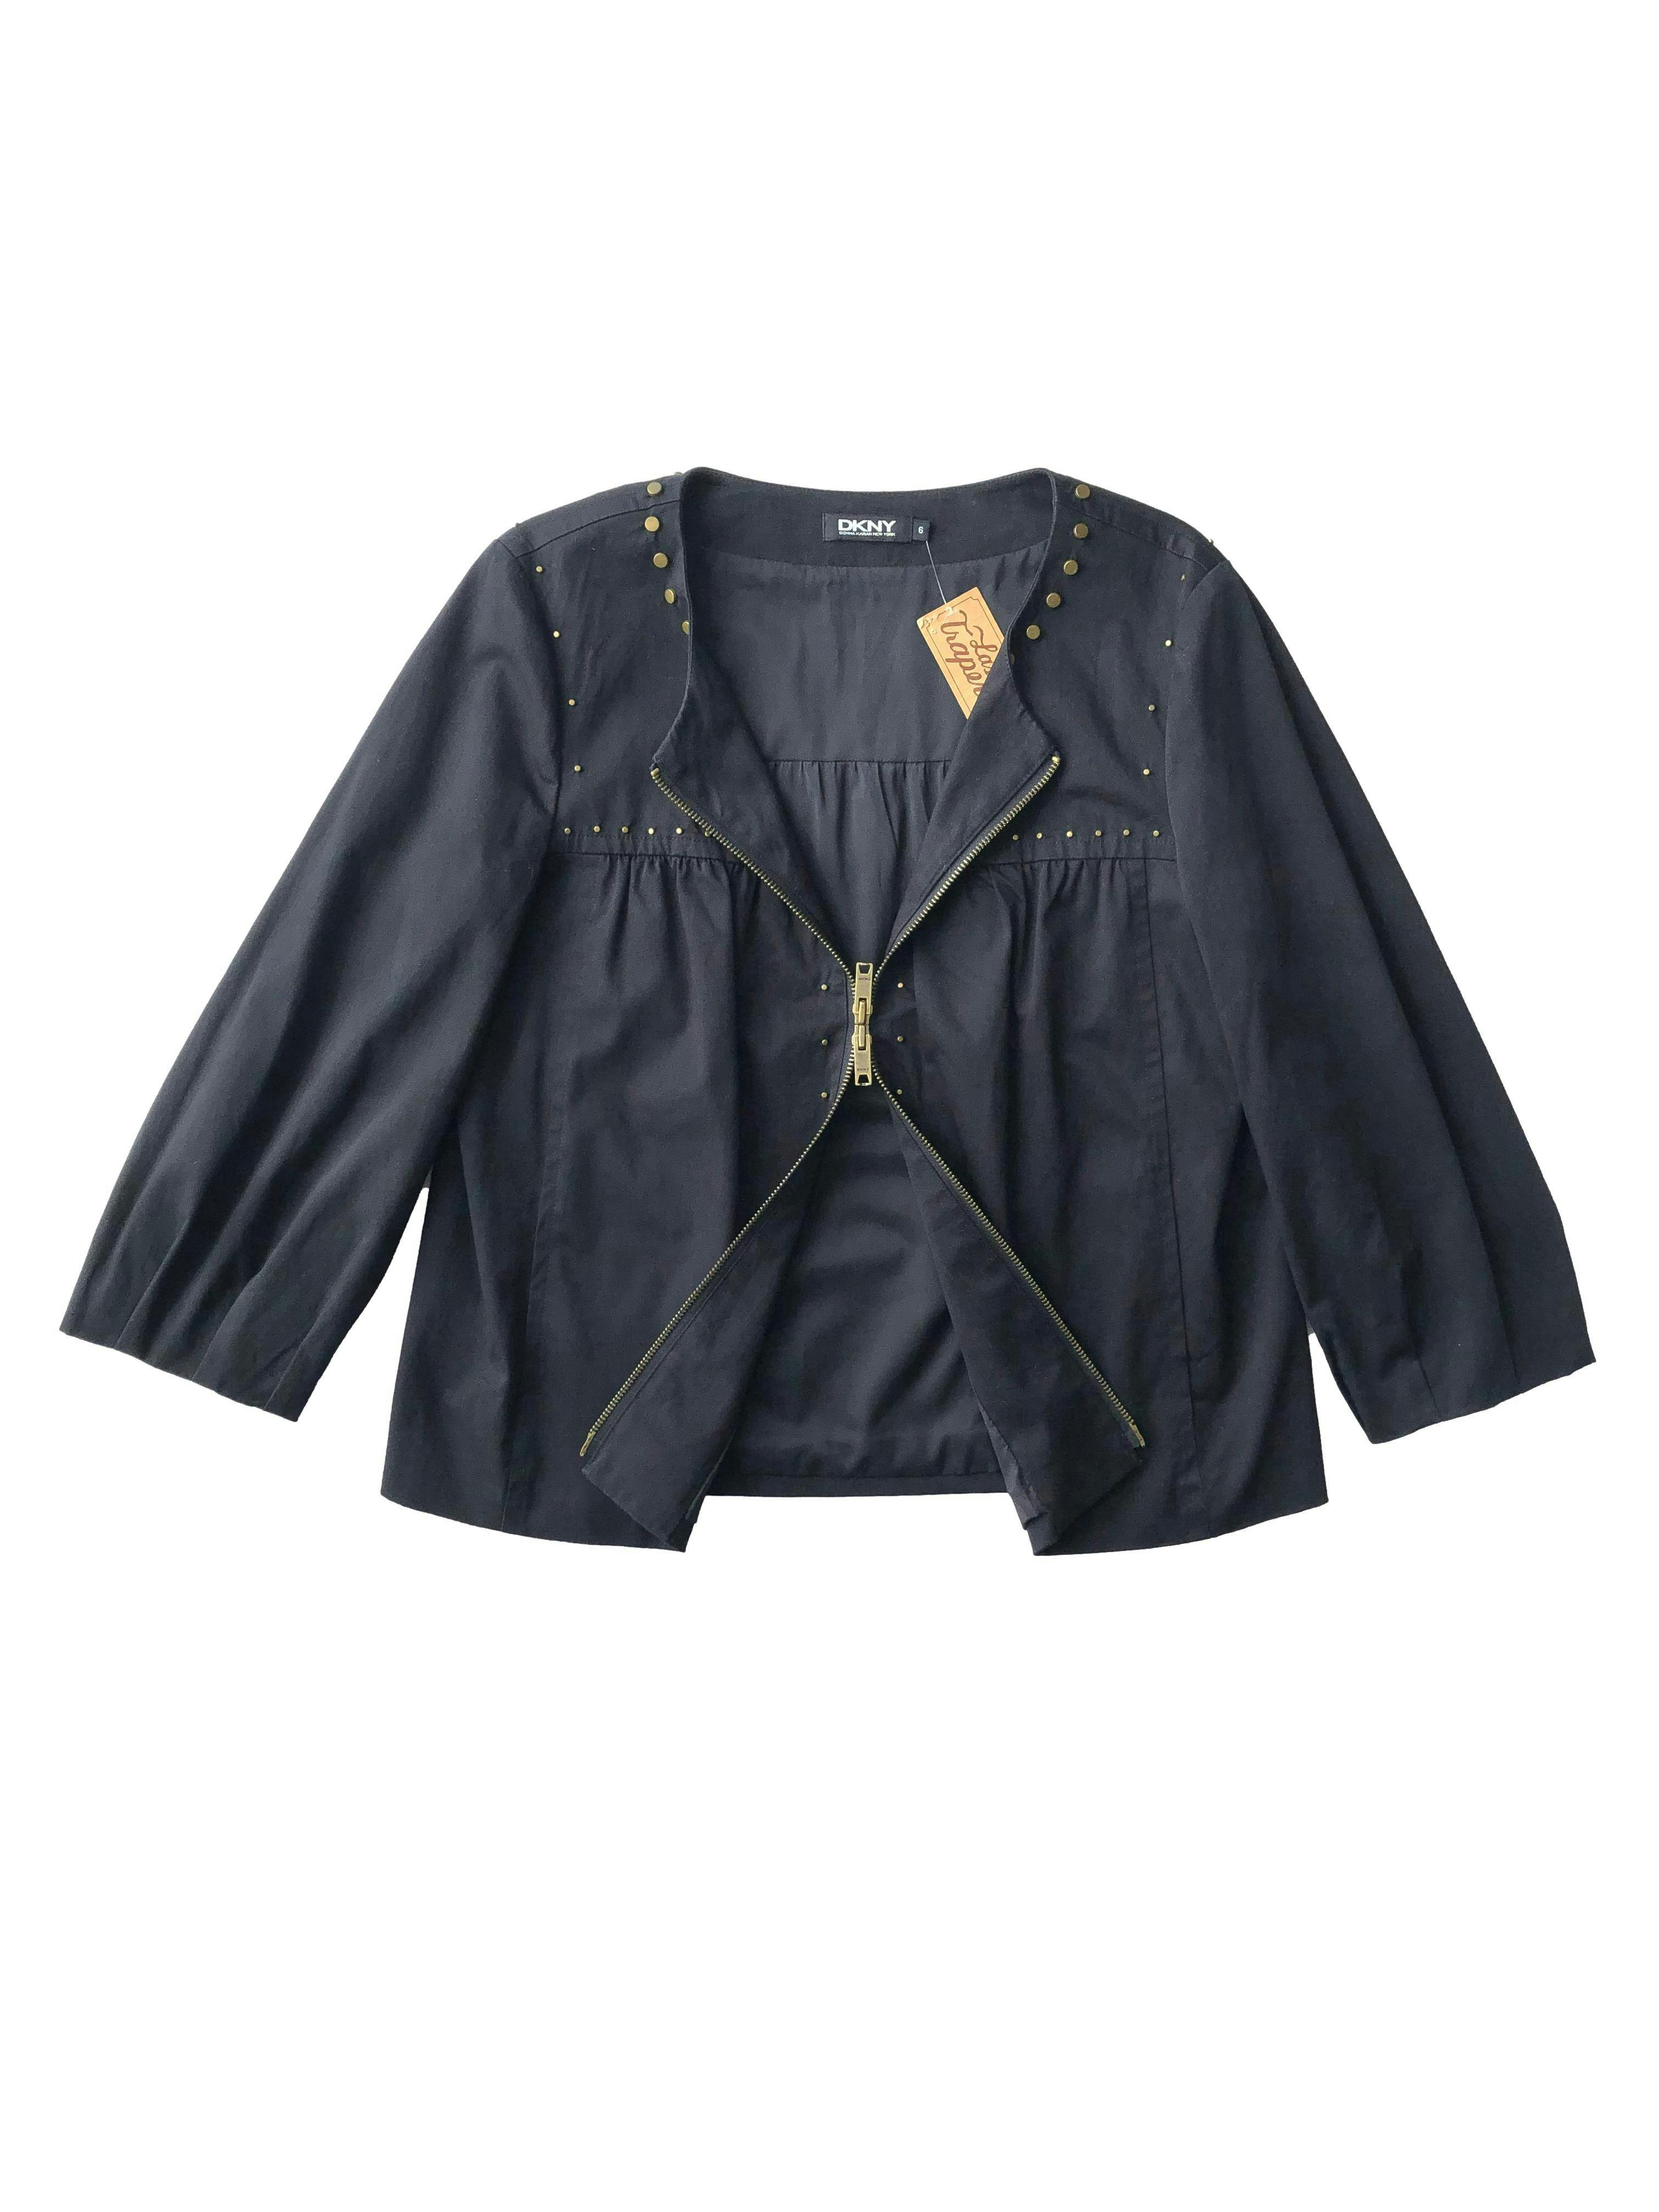 Casaca negra DKNY de drill 97% algodón con tachas bronce, forro, recogido en pecho, mangas abullonadas, bolsillos y cierre doble sentido. Busto 108cm, Largo 56cm.